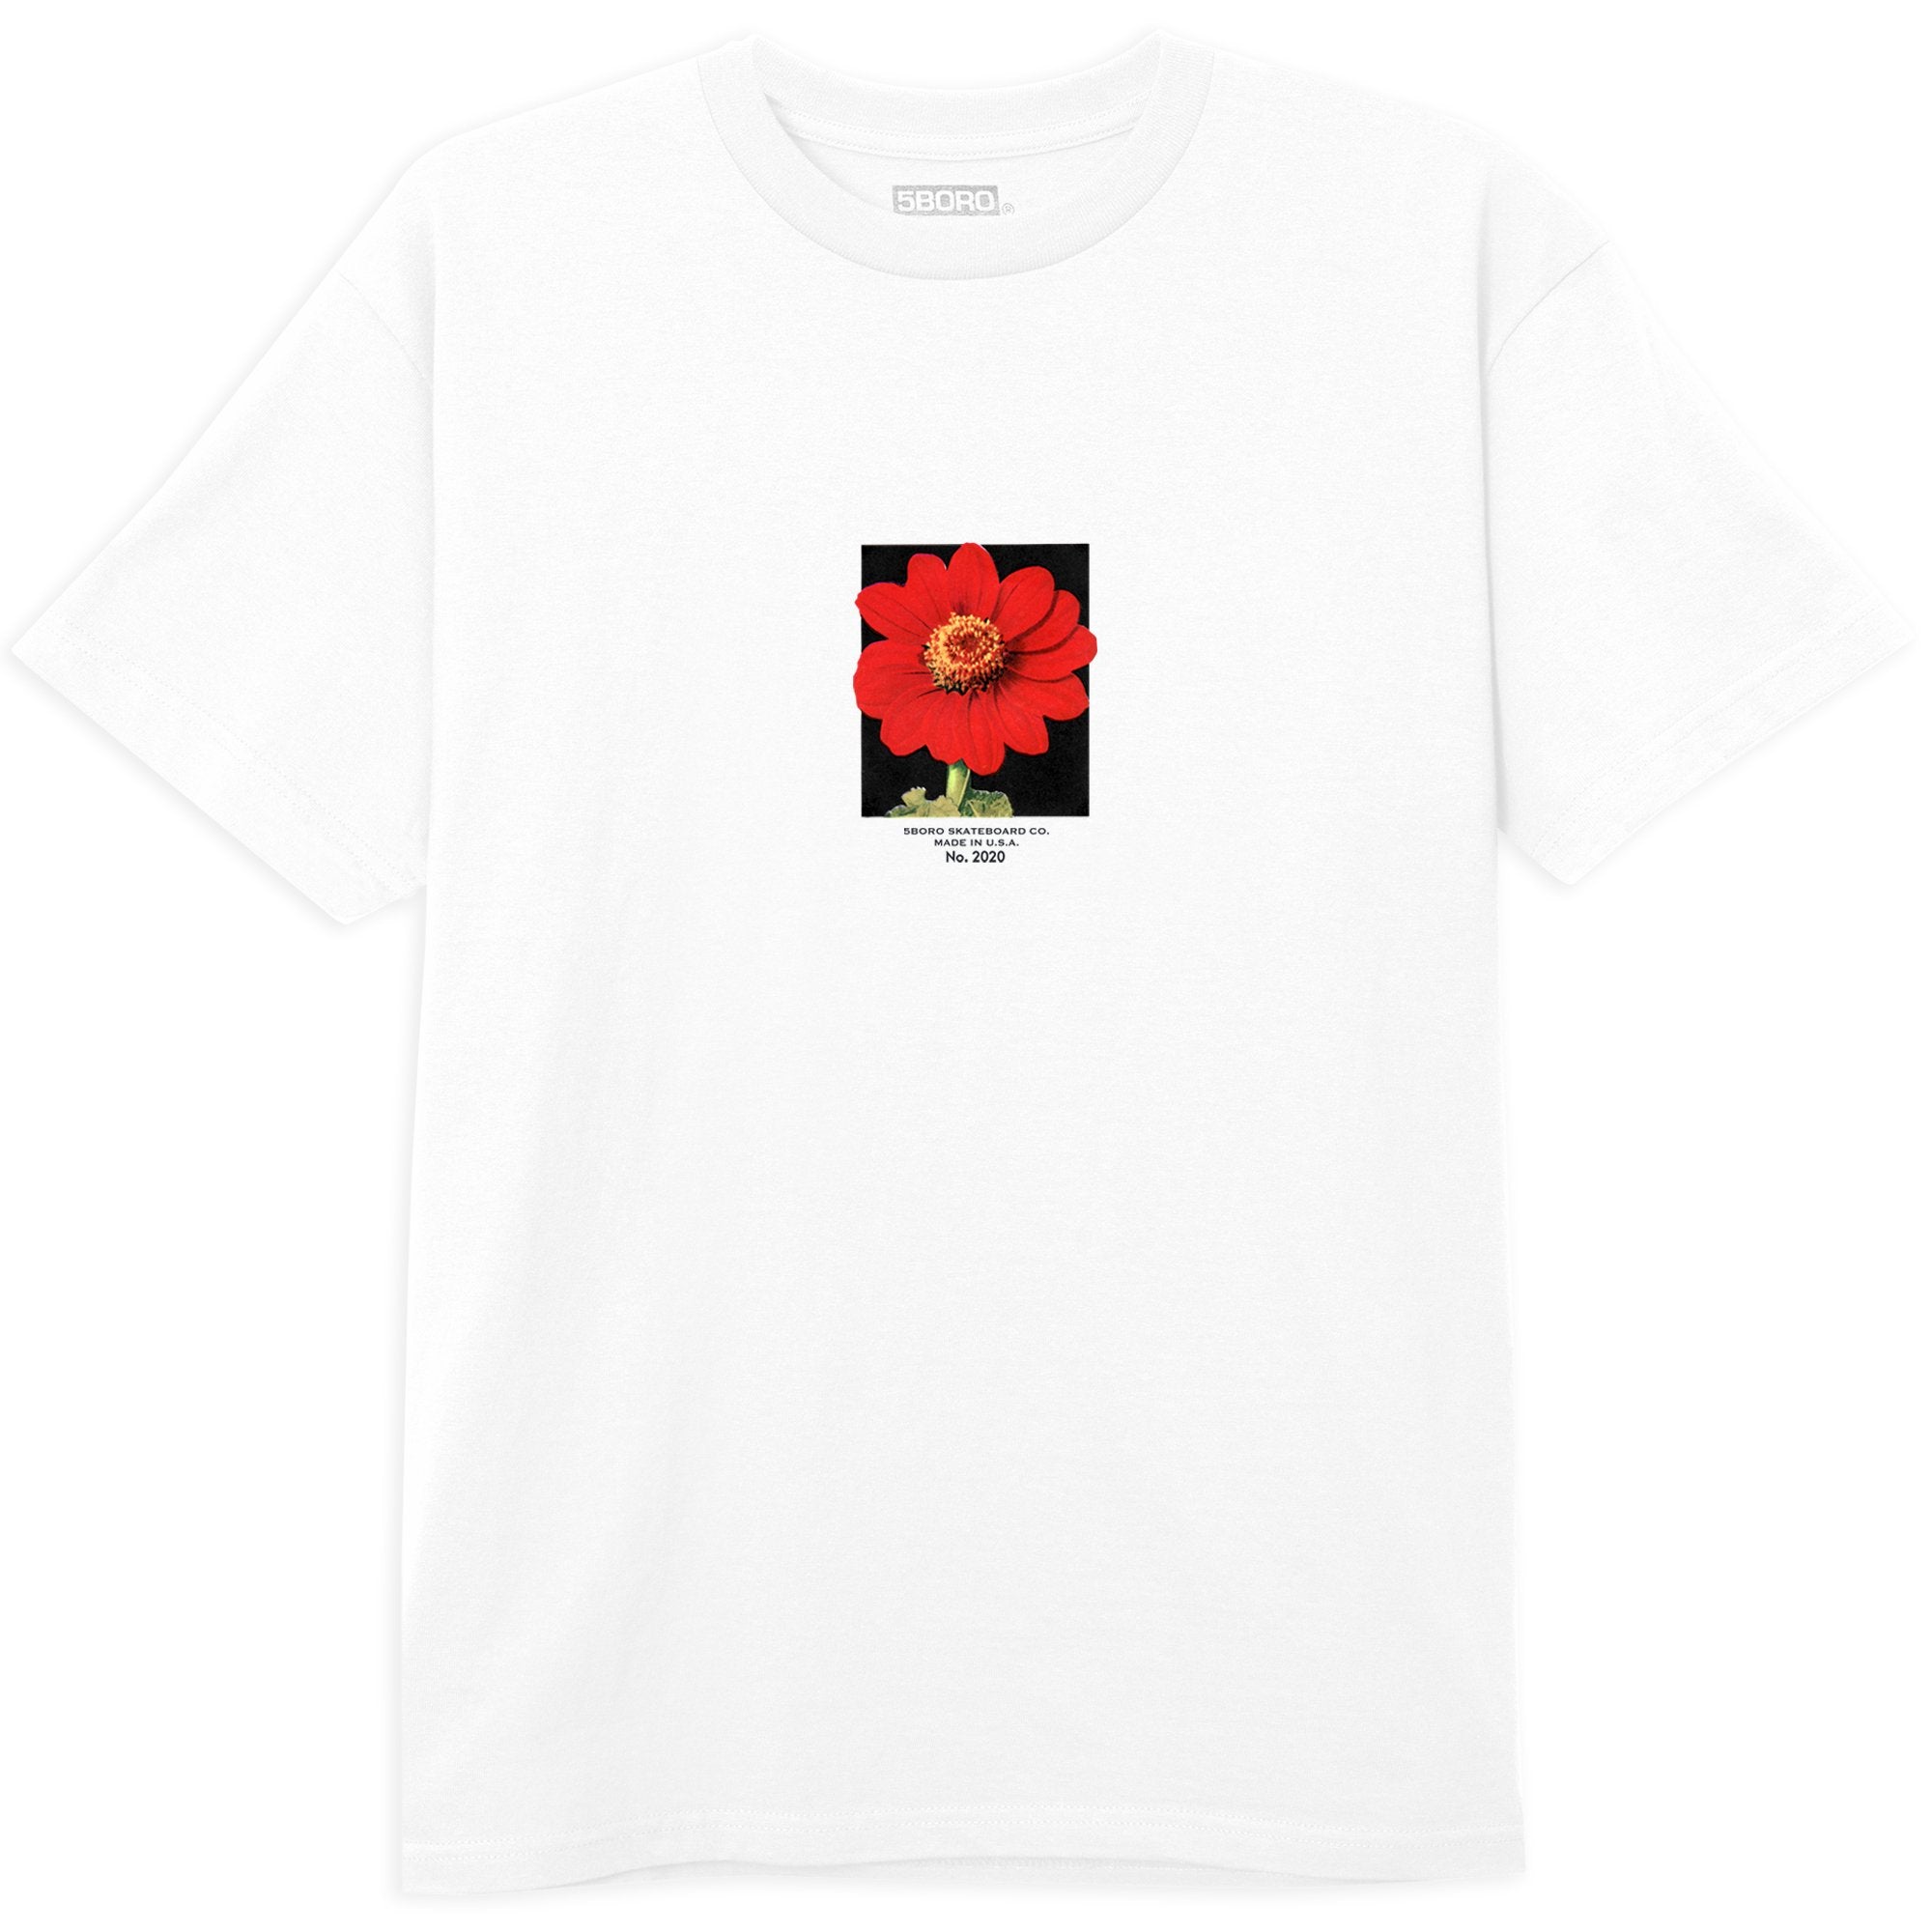 5BORO - 5B FLOWER RED S/S TEE "White"